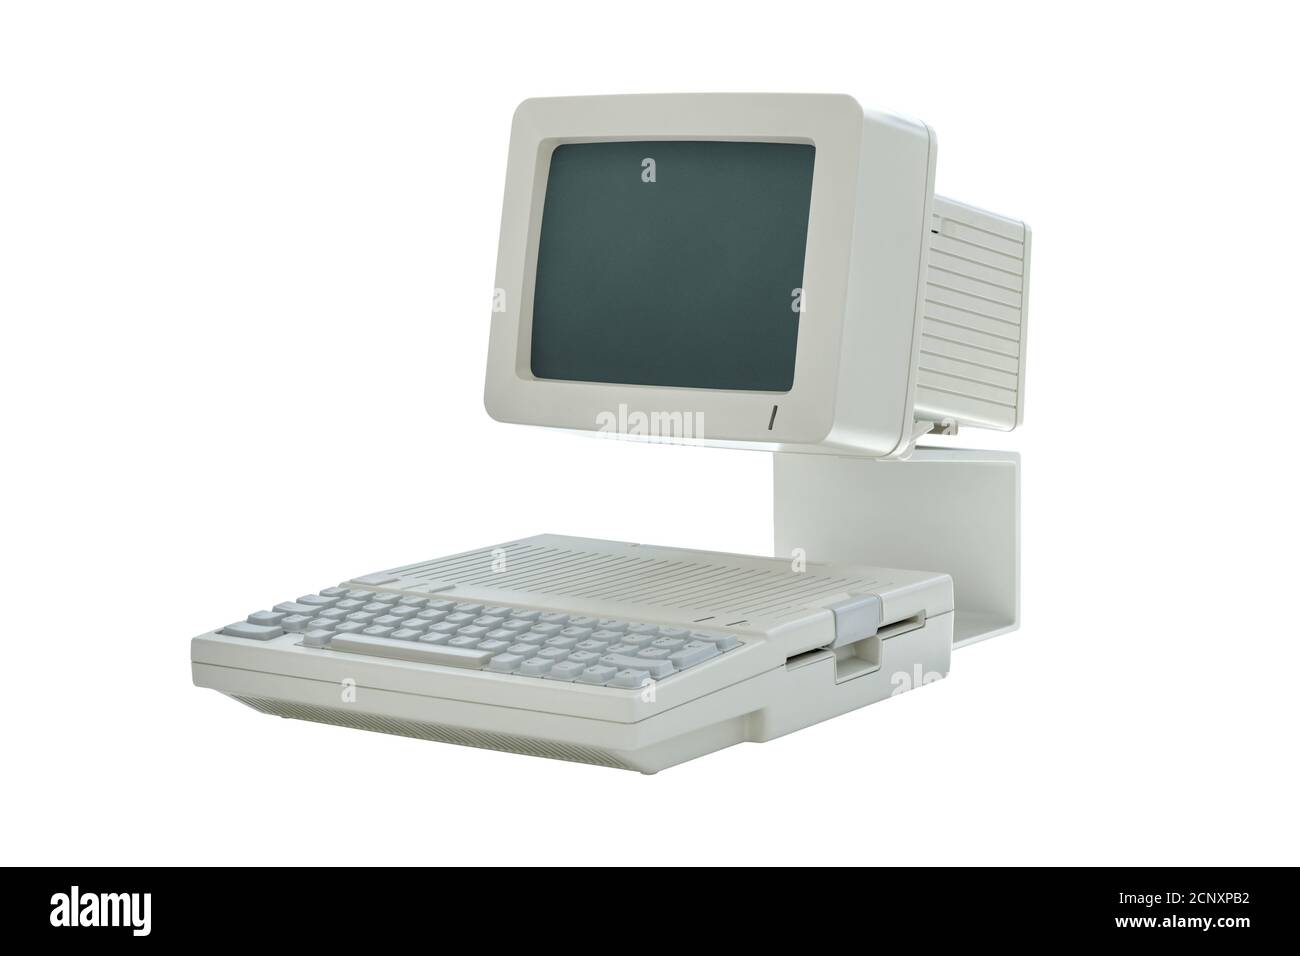 Alte Vintage Desktop-Computer aus den achtziger Jahren mit integriertem Monitor und Tastatur isoliert auf weißem Hintergrund. Seitenansicht des klassischen Retro-PCs Stockfoto